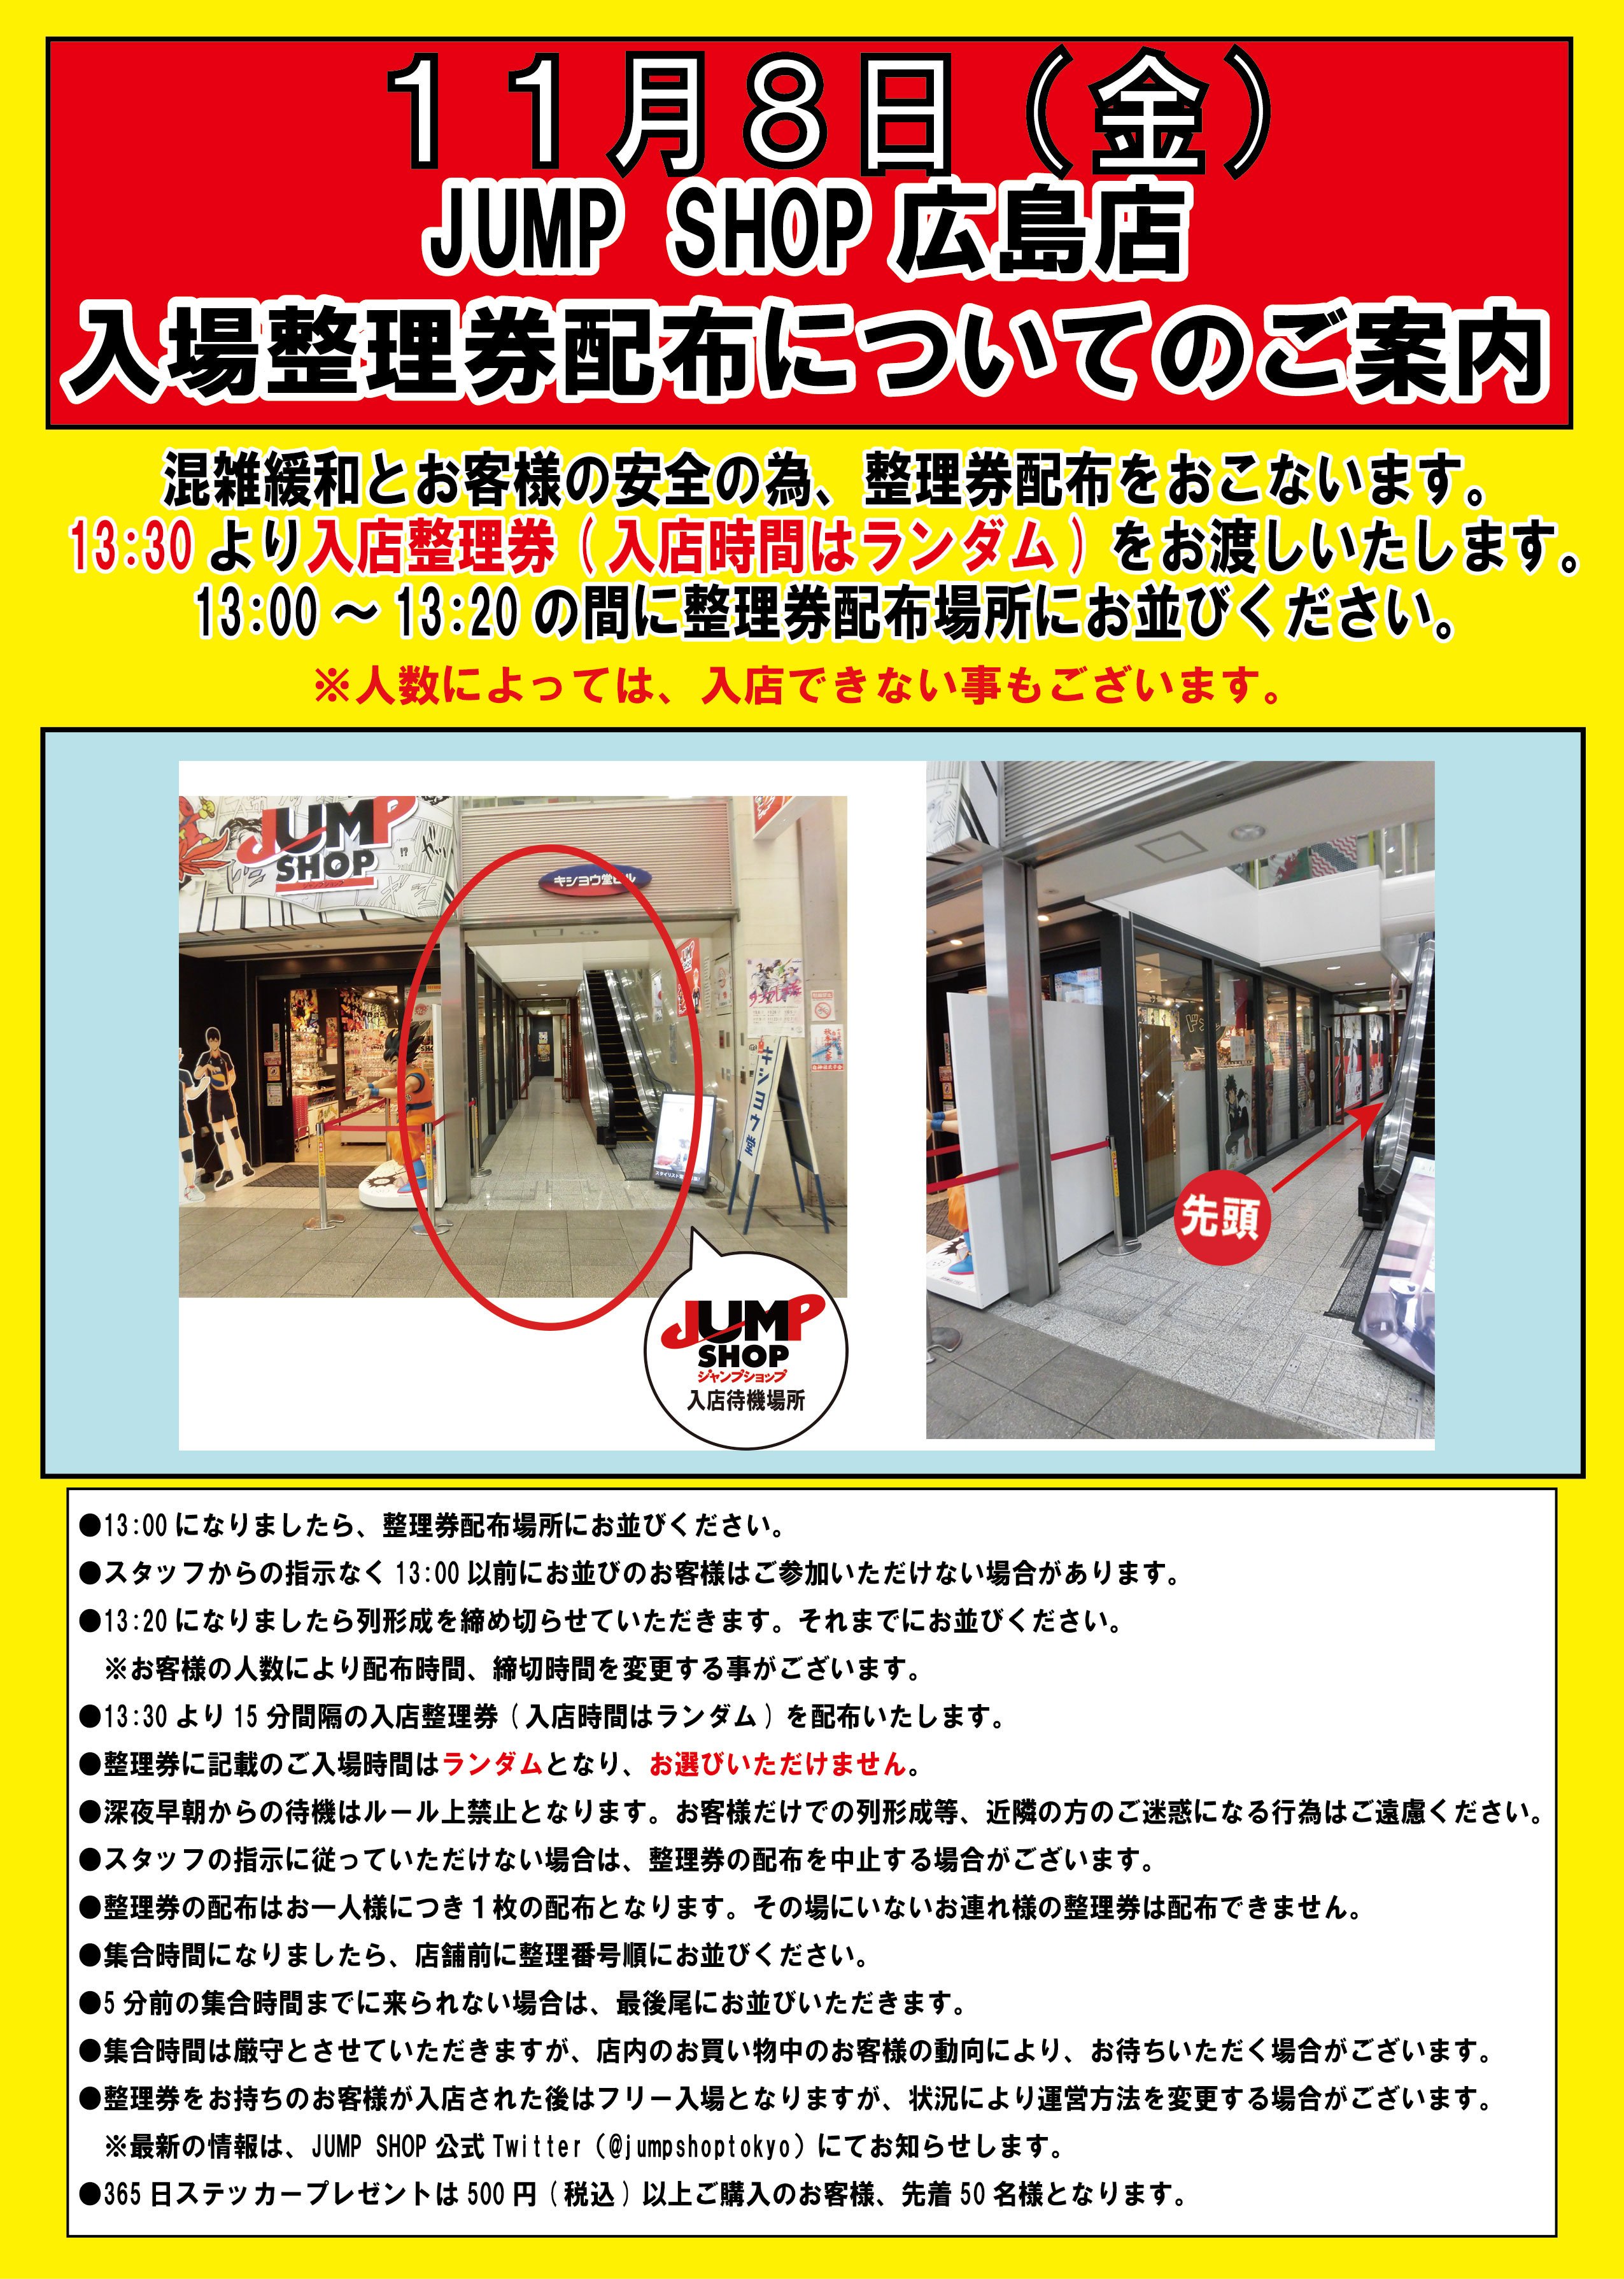 ジャンプショップ Jump Shop 公式 Jump Shop広島店入場整理券配布のご案内 Jump Shop広島店は 13 30より再度 入店整理券 時間はランダム を配布を行います 13 00 13 にお並びいただいた方が対象となります 人数によっては入店できないことも